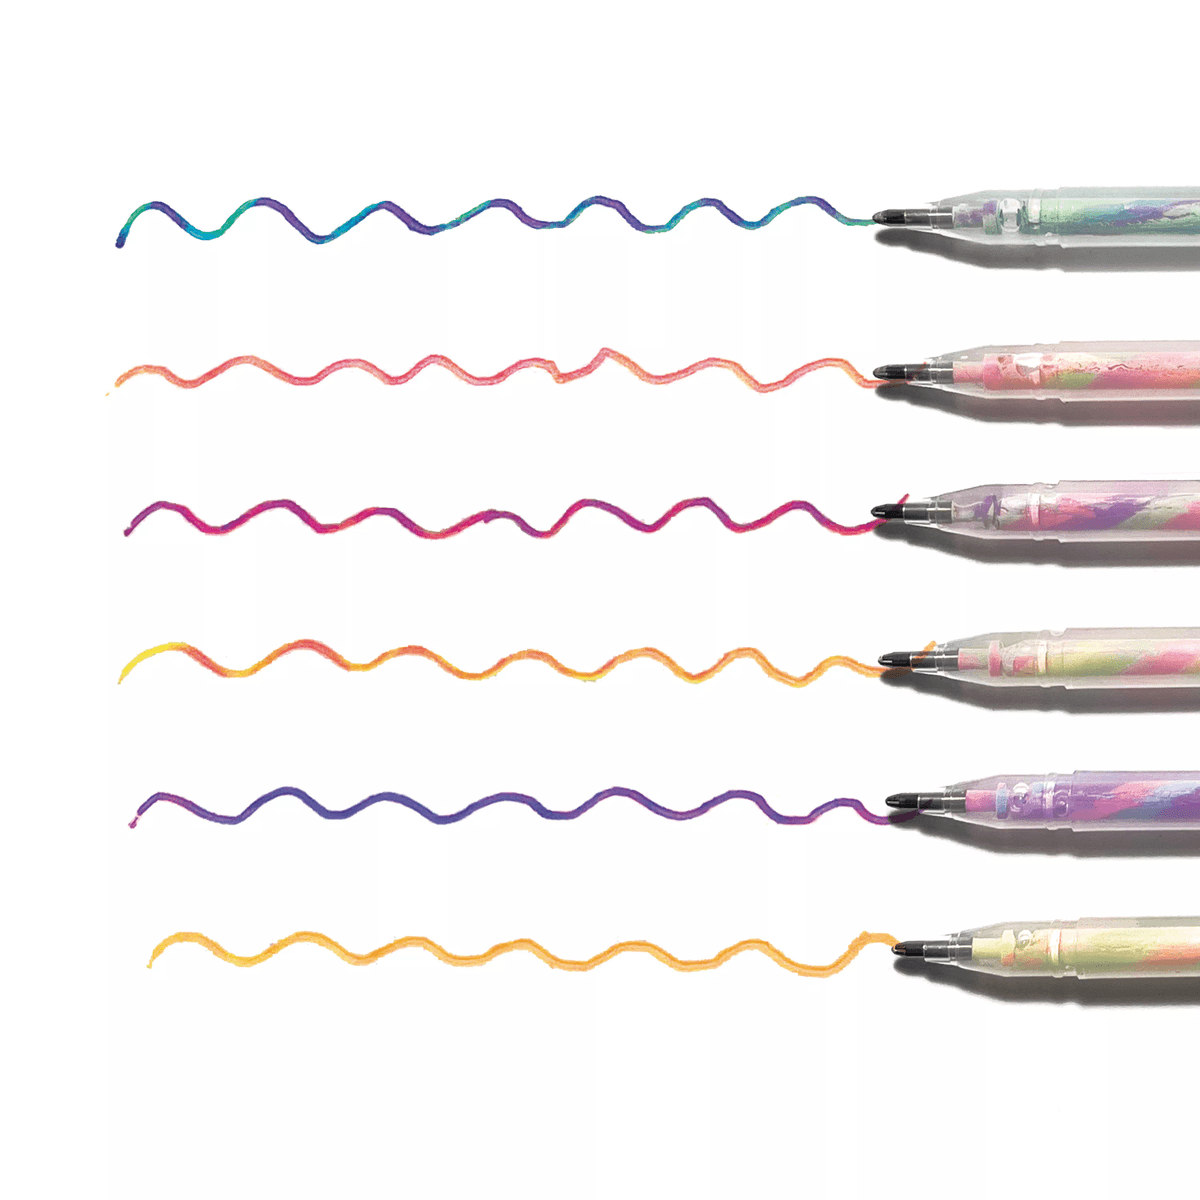 Ooly Unique Unicorns 6 Click Multicolour Pen - UK